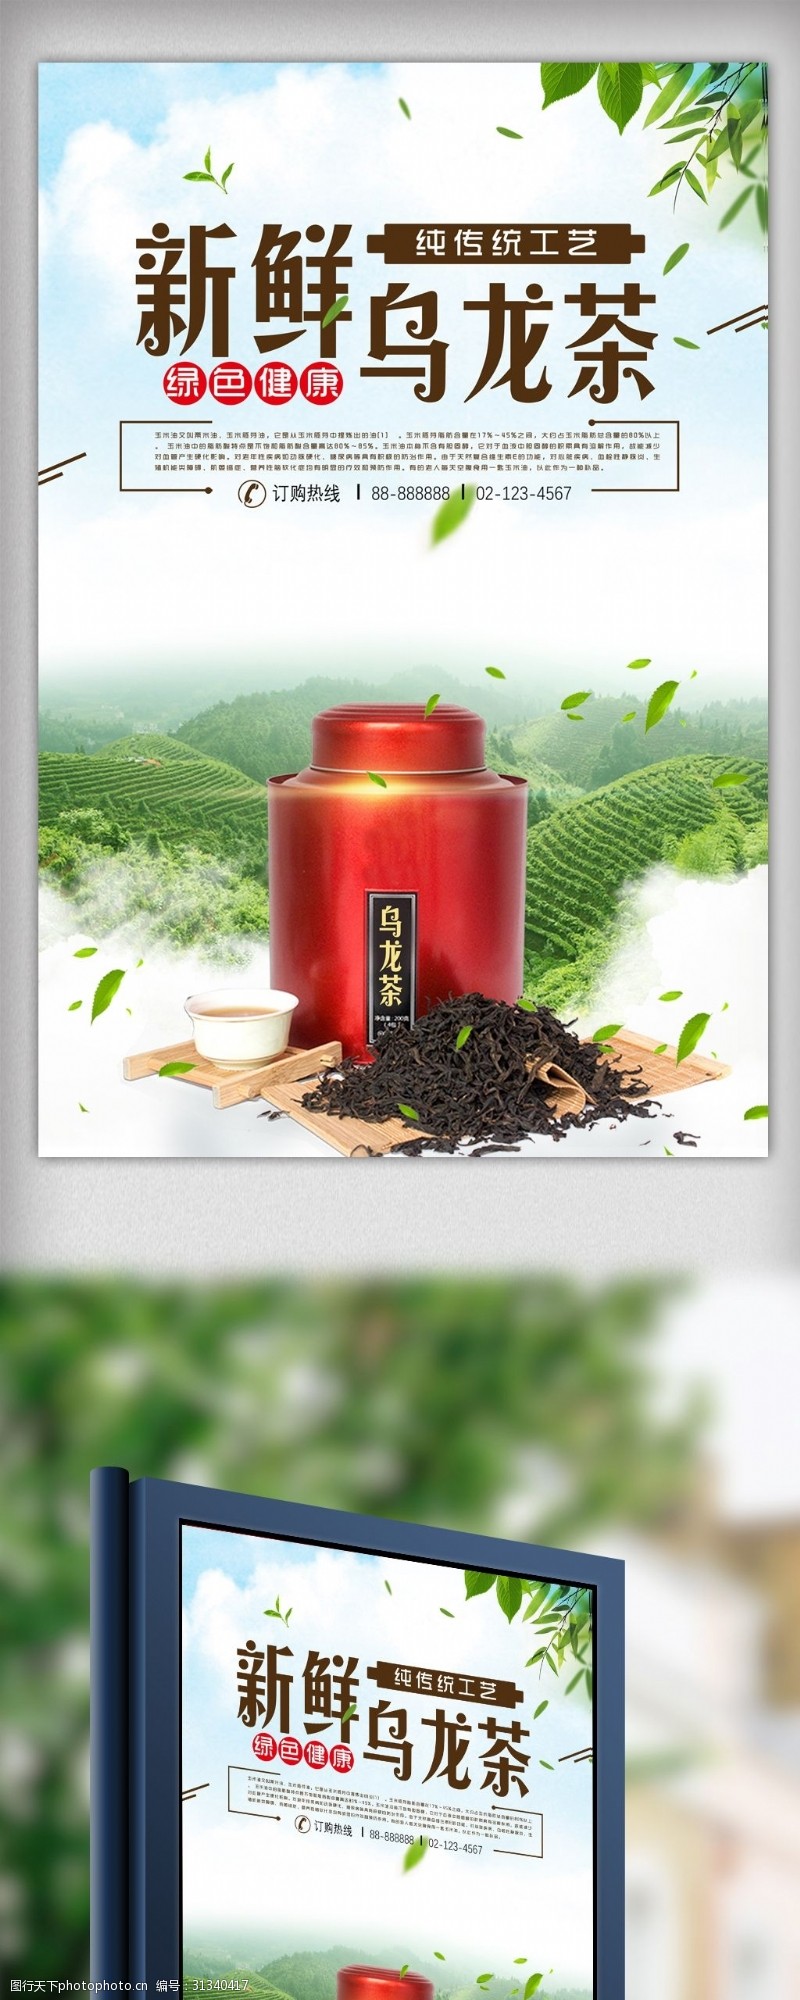 瘦身包装乌龙茶茶叶中国文化宣传海报